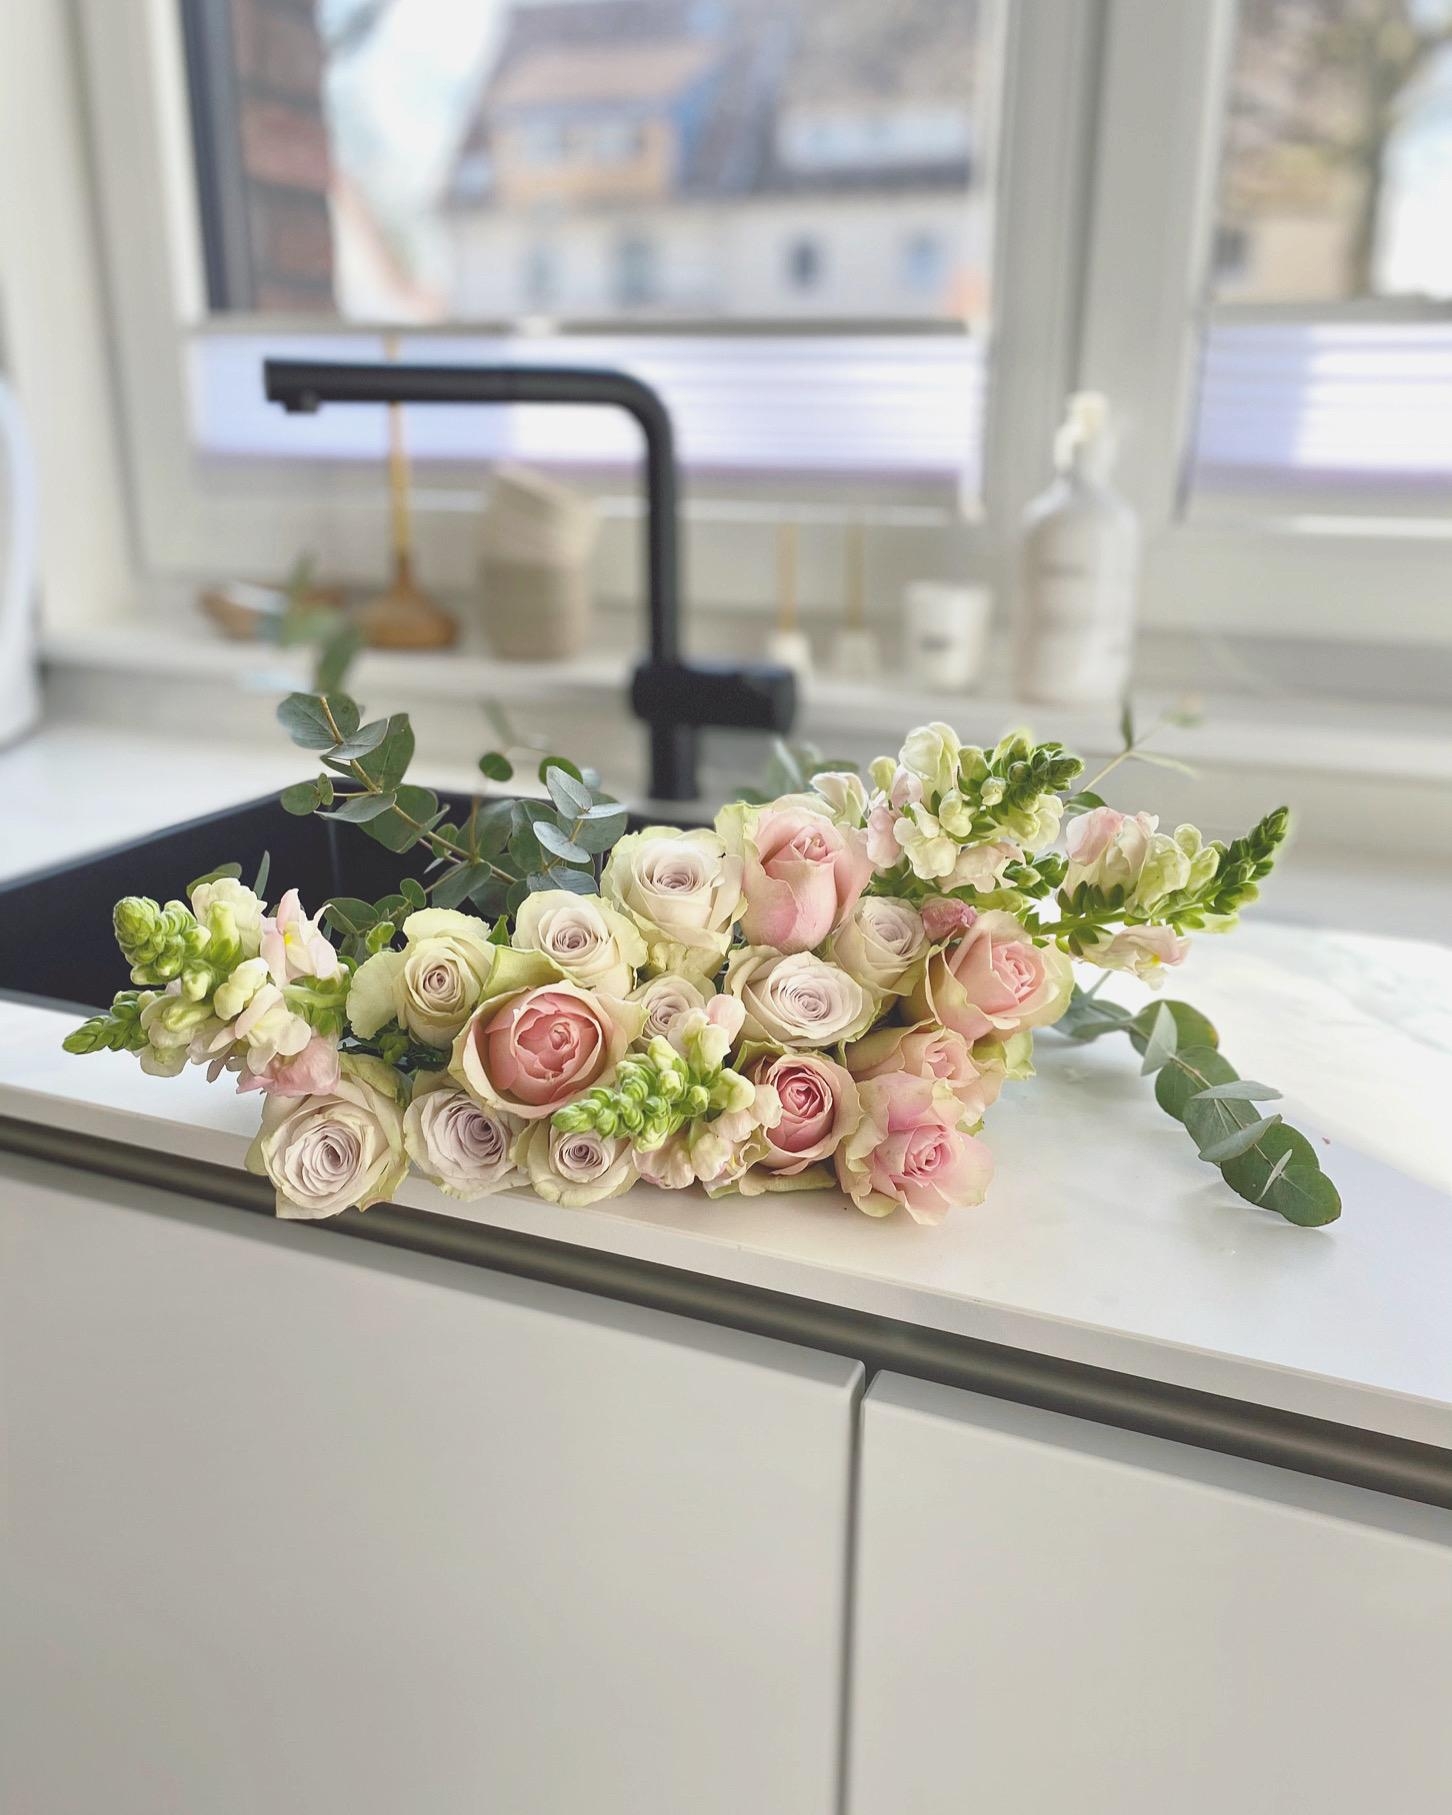 Flowers for you 🌸🌸
#blumen#blumenliebe#küche#freshflowers#interior